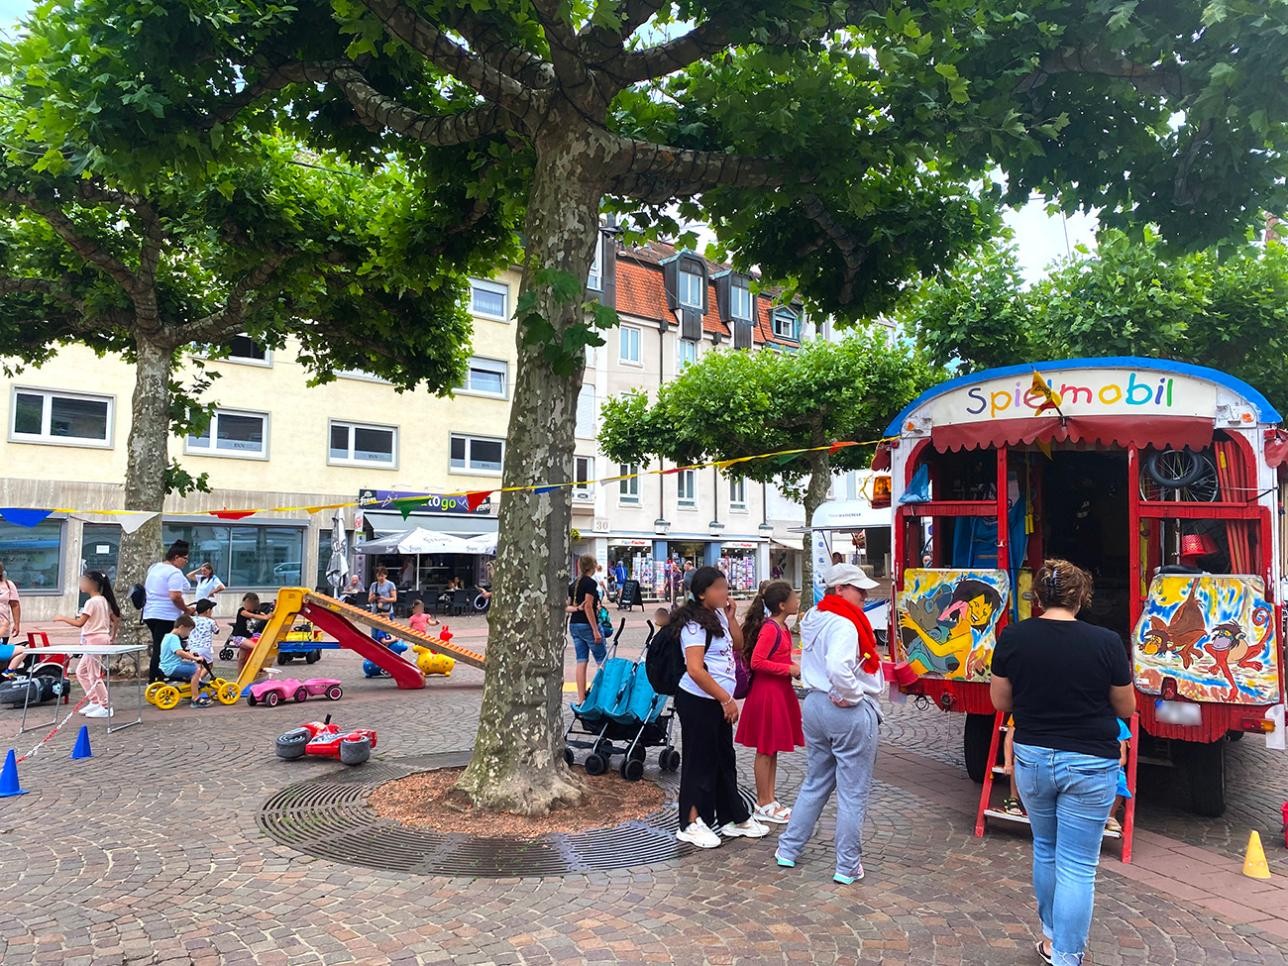 Children play on the market square in Rastatt